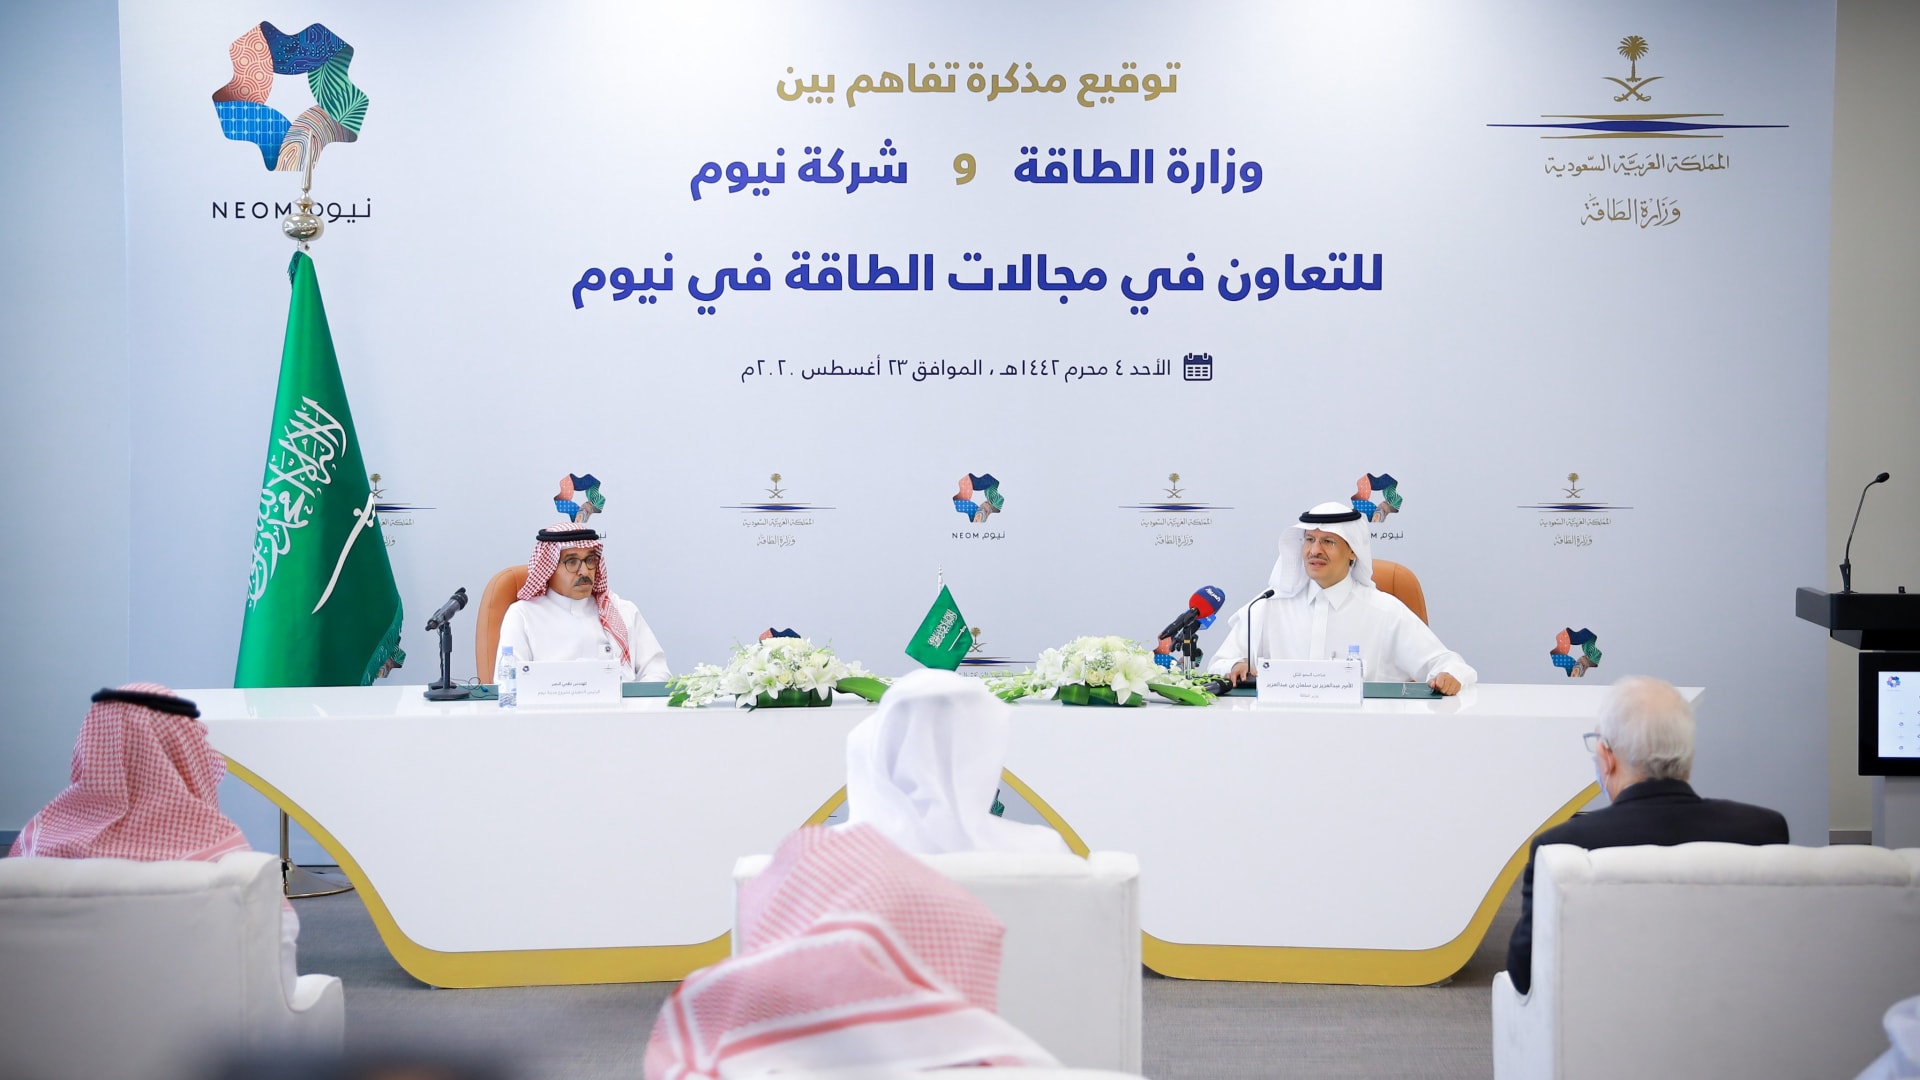 وزارة الطاقة السعودية وشركة "نيوم" توقعان على مذكرة تفاهم للعمل في مجال الطاقة.. هذه تفاصيلها